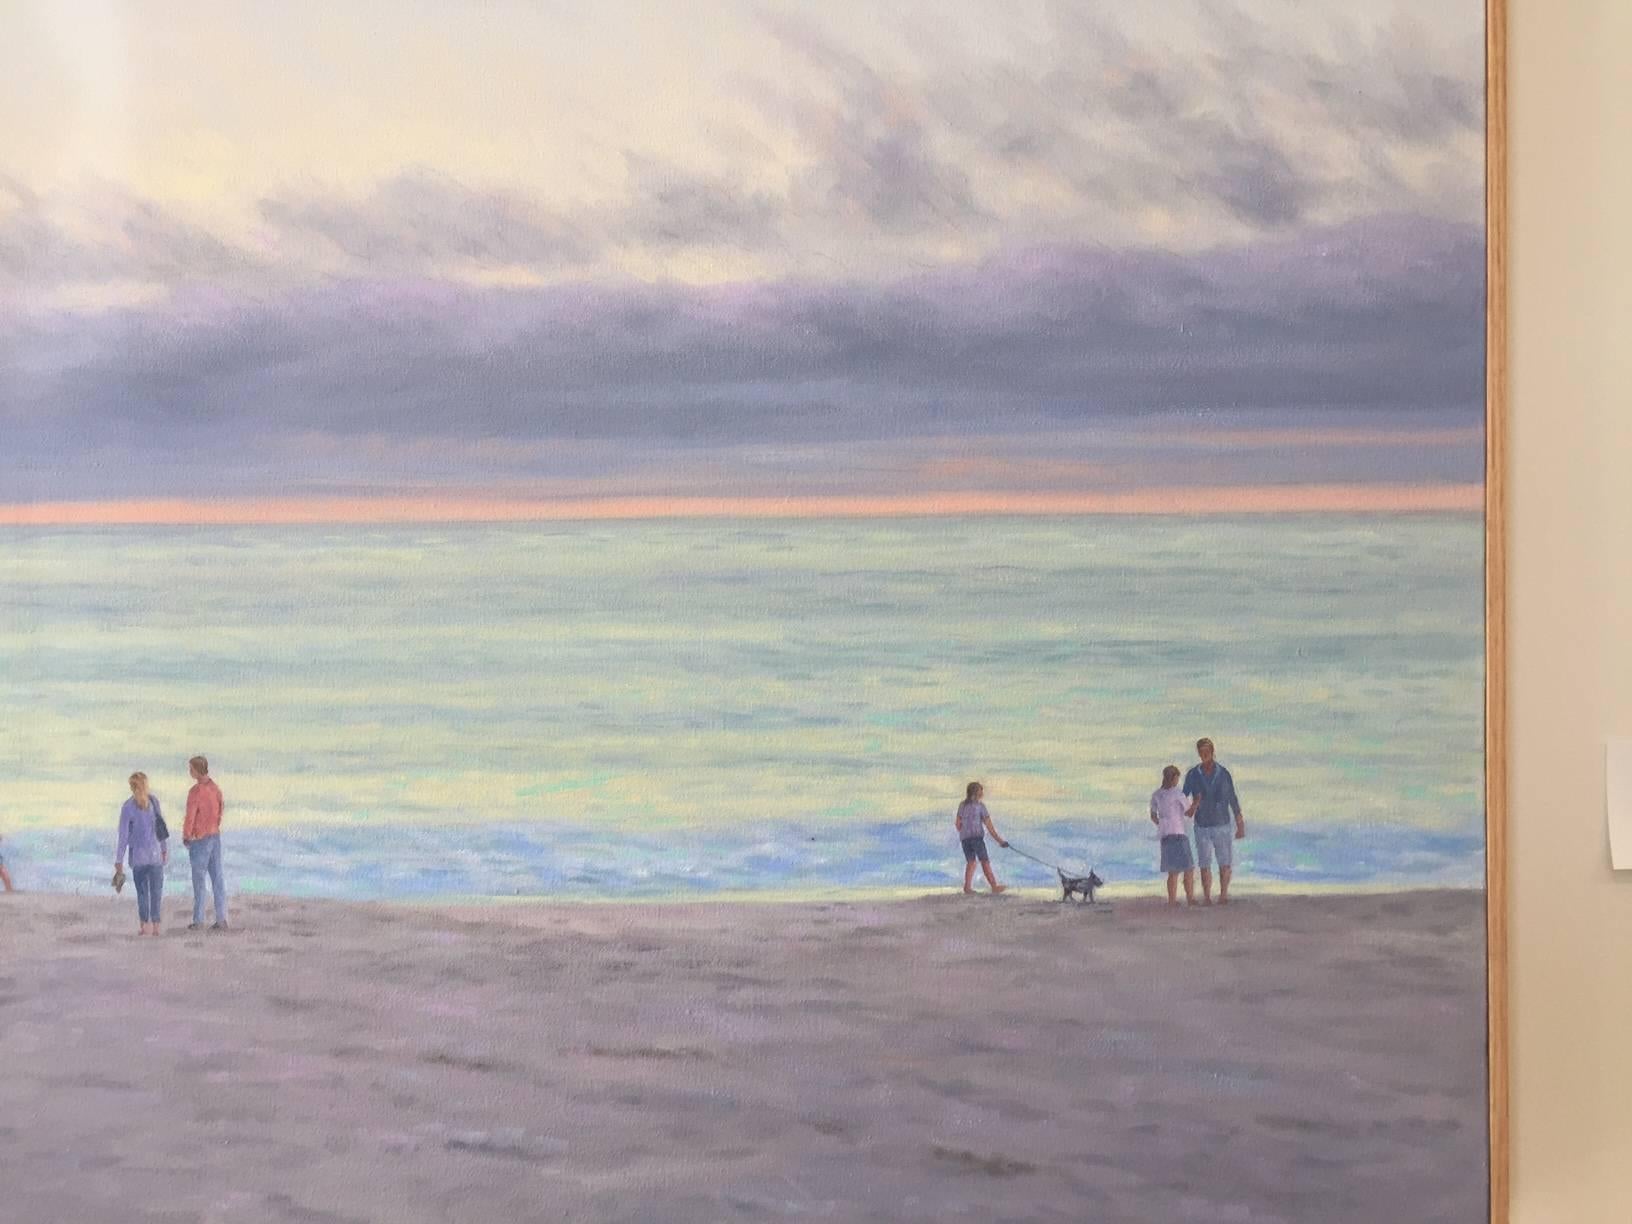 Ein ruhiges Ölgemälde, das einen frühen Sonnenuntergang mit Menschen zeigt, die vor einem majestätischen Himmel am Strand spazieren gehen. Es stammt von Willard Dixon, einem der besten zeitgenössischen amerikanischen Realisten der Gegenwart. Dixon